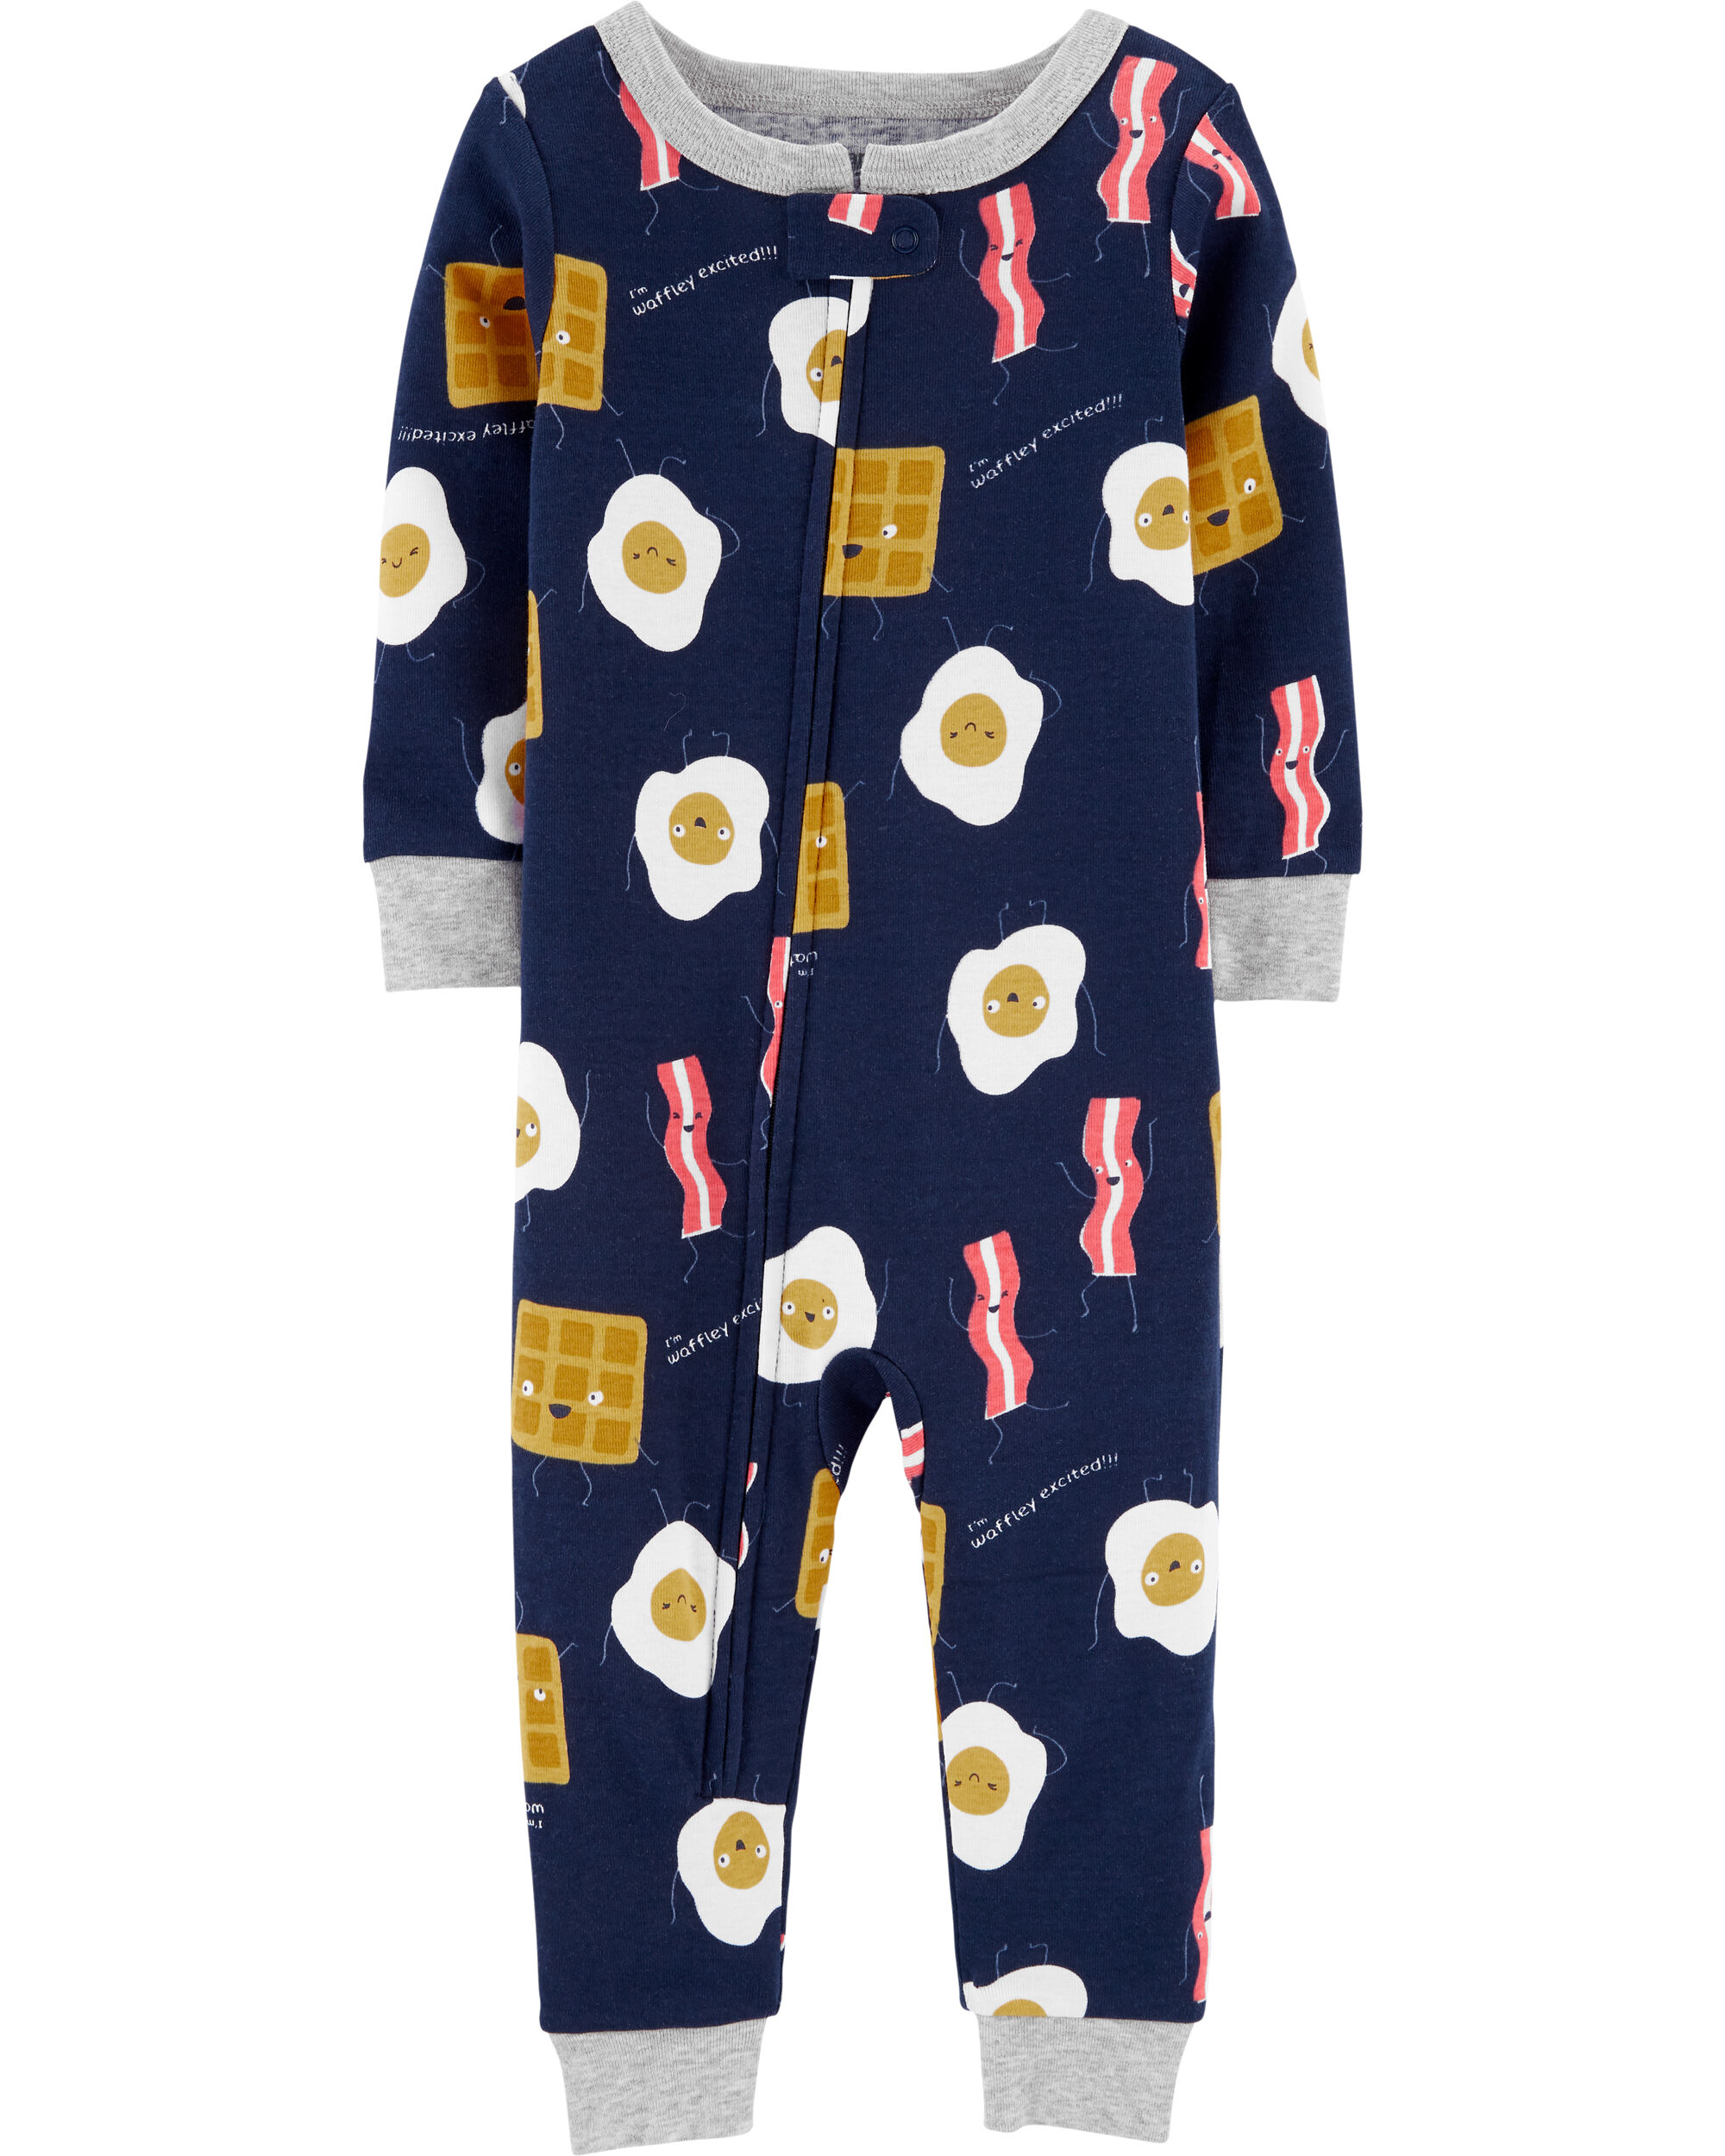 carters childrens pajamas